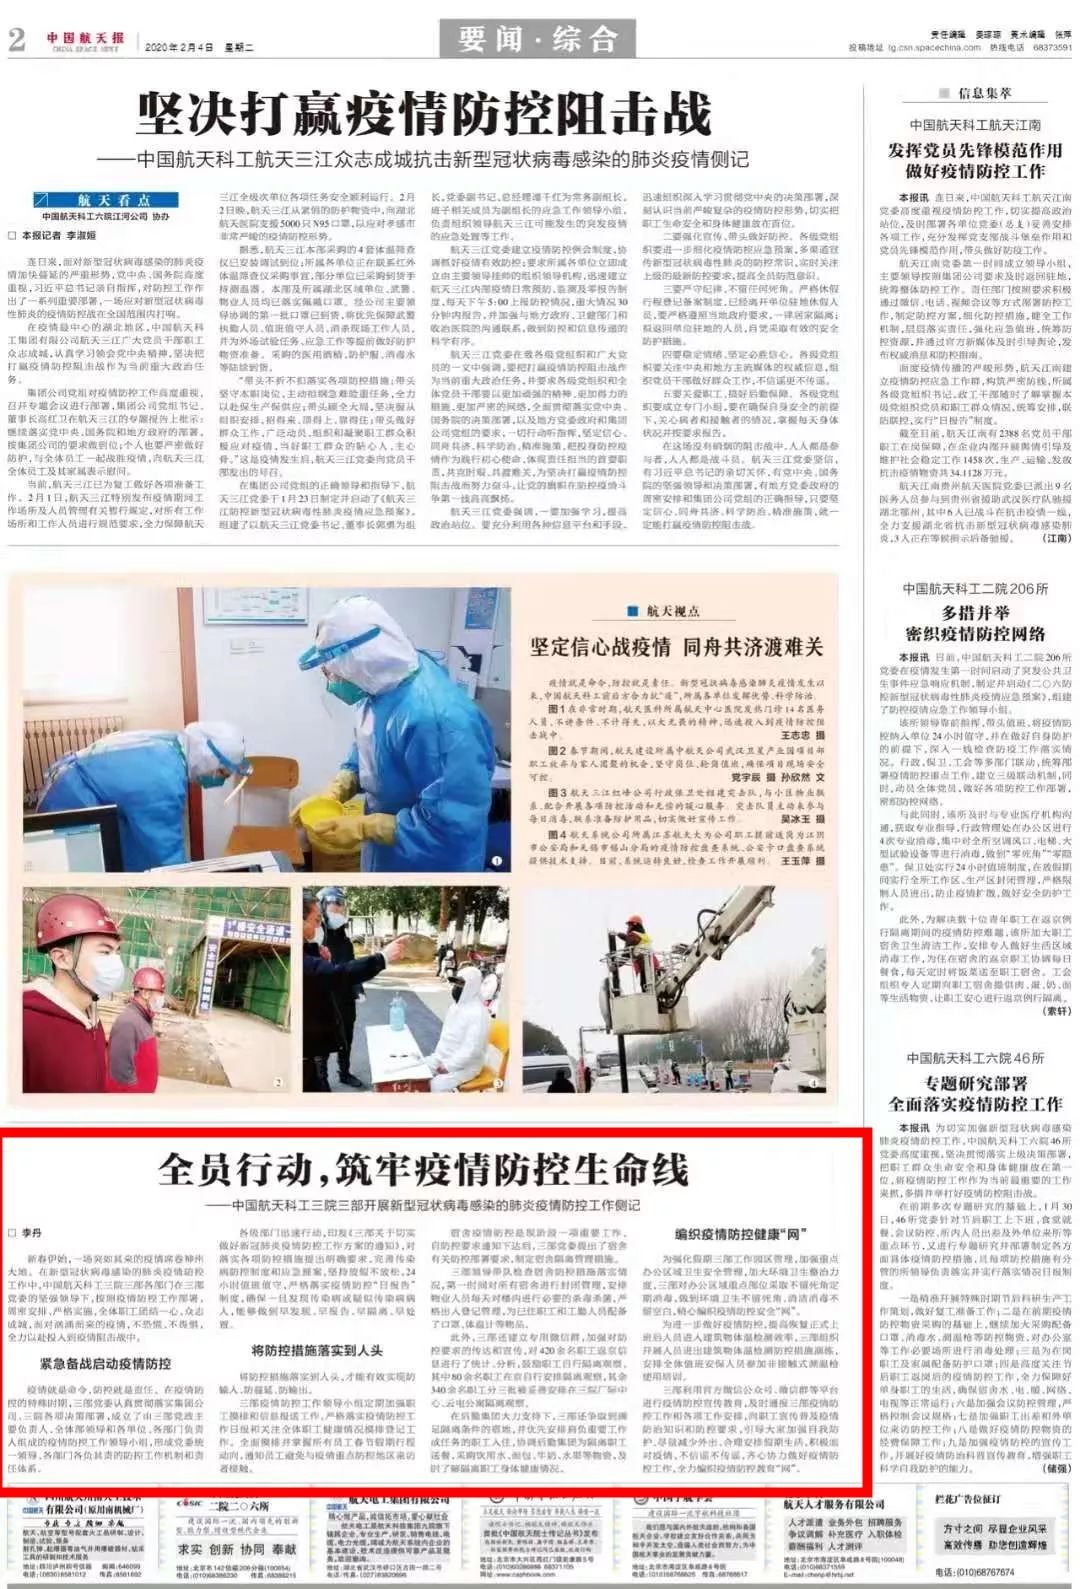 《中国航天报》报道三院疫情防控事迹三院高度关注舆情动态,促进